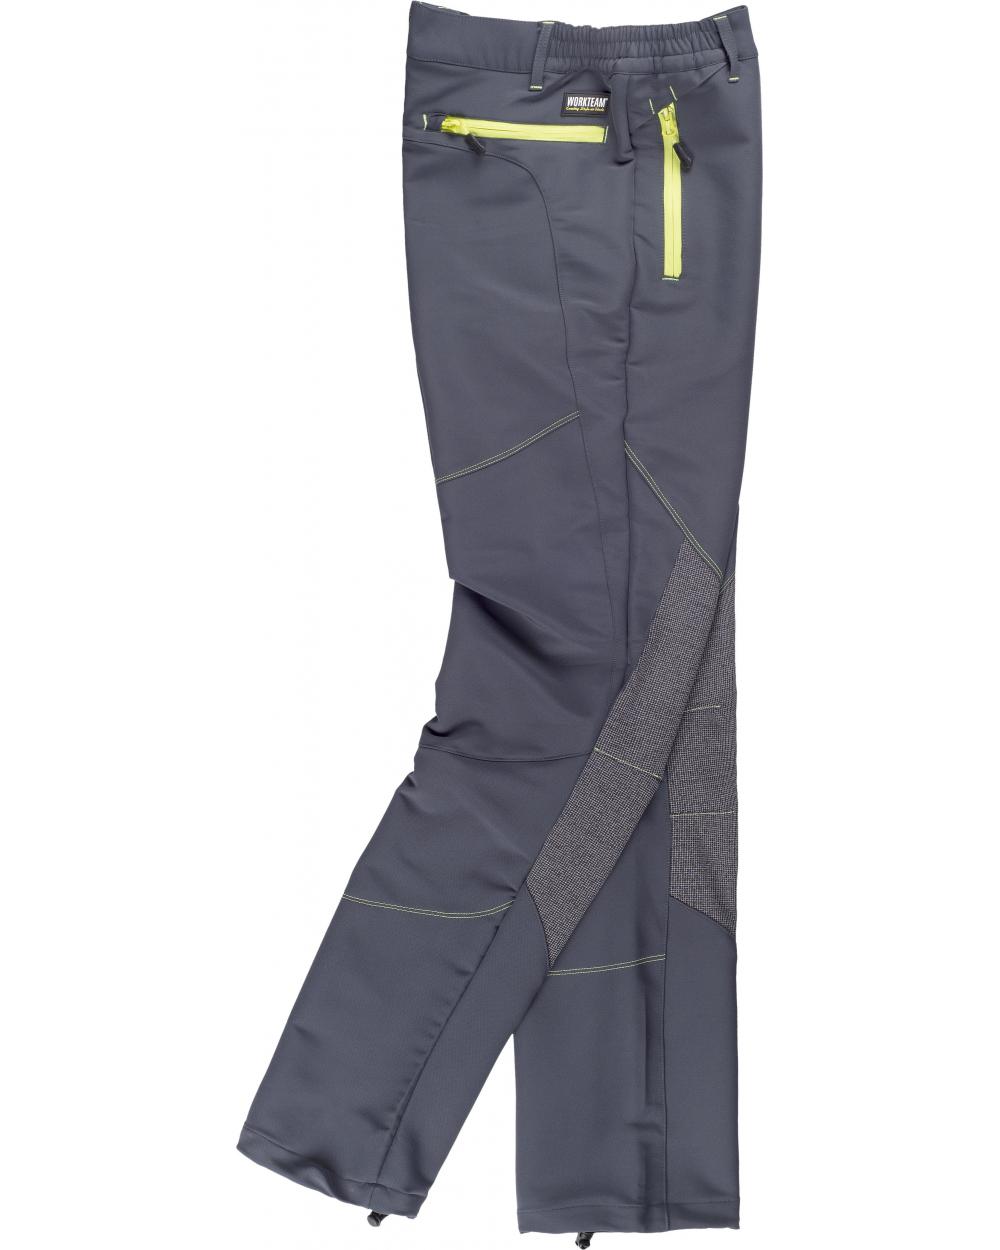 Comprar Pantalon de montaña con tejido ripstop S9855 Gris Oscuro+Negro workteam barato